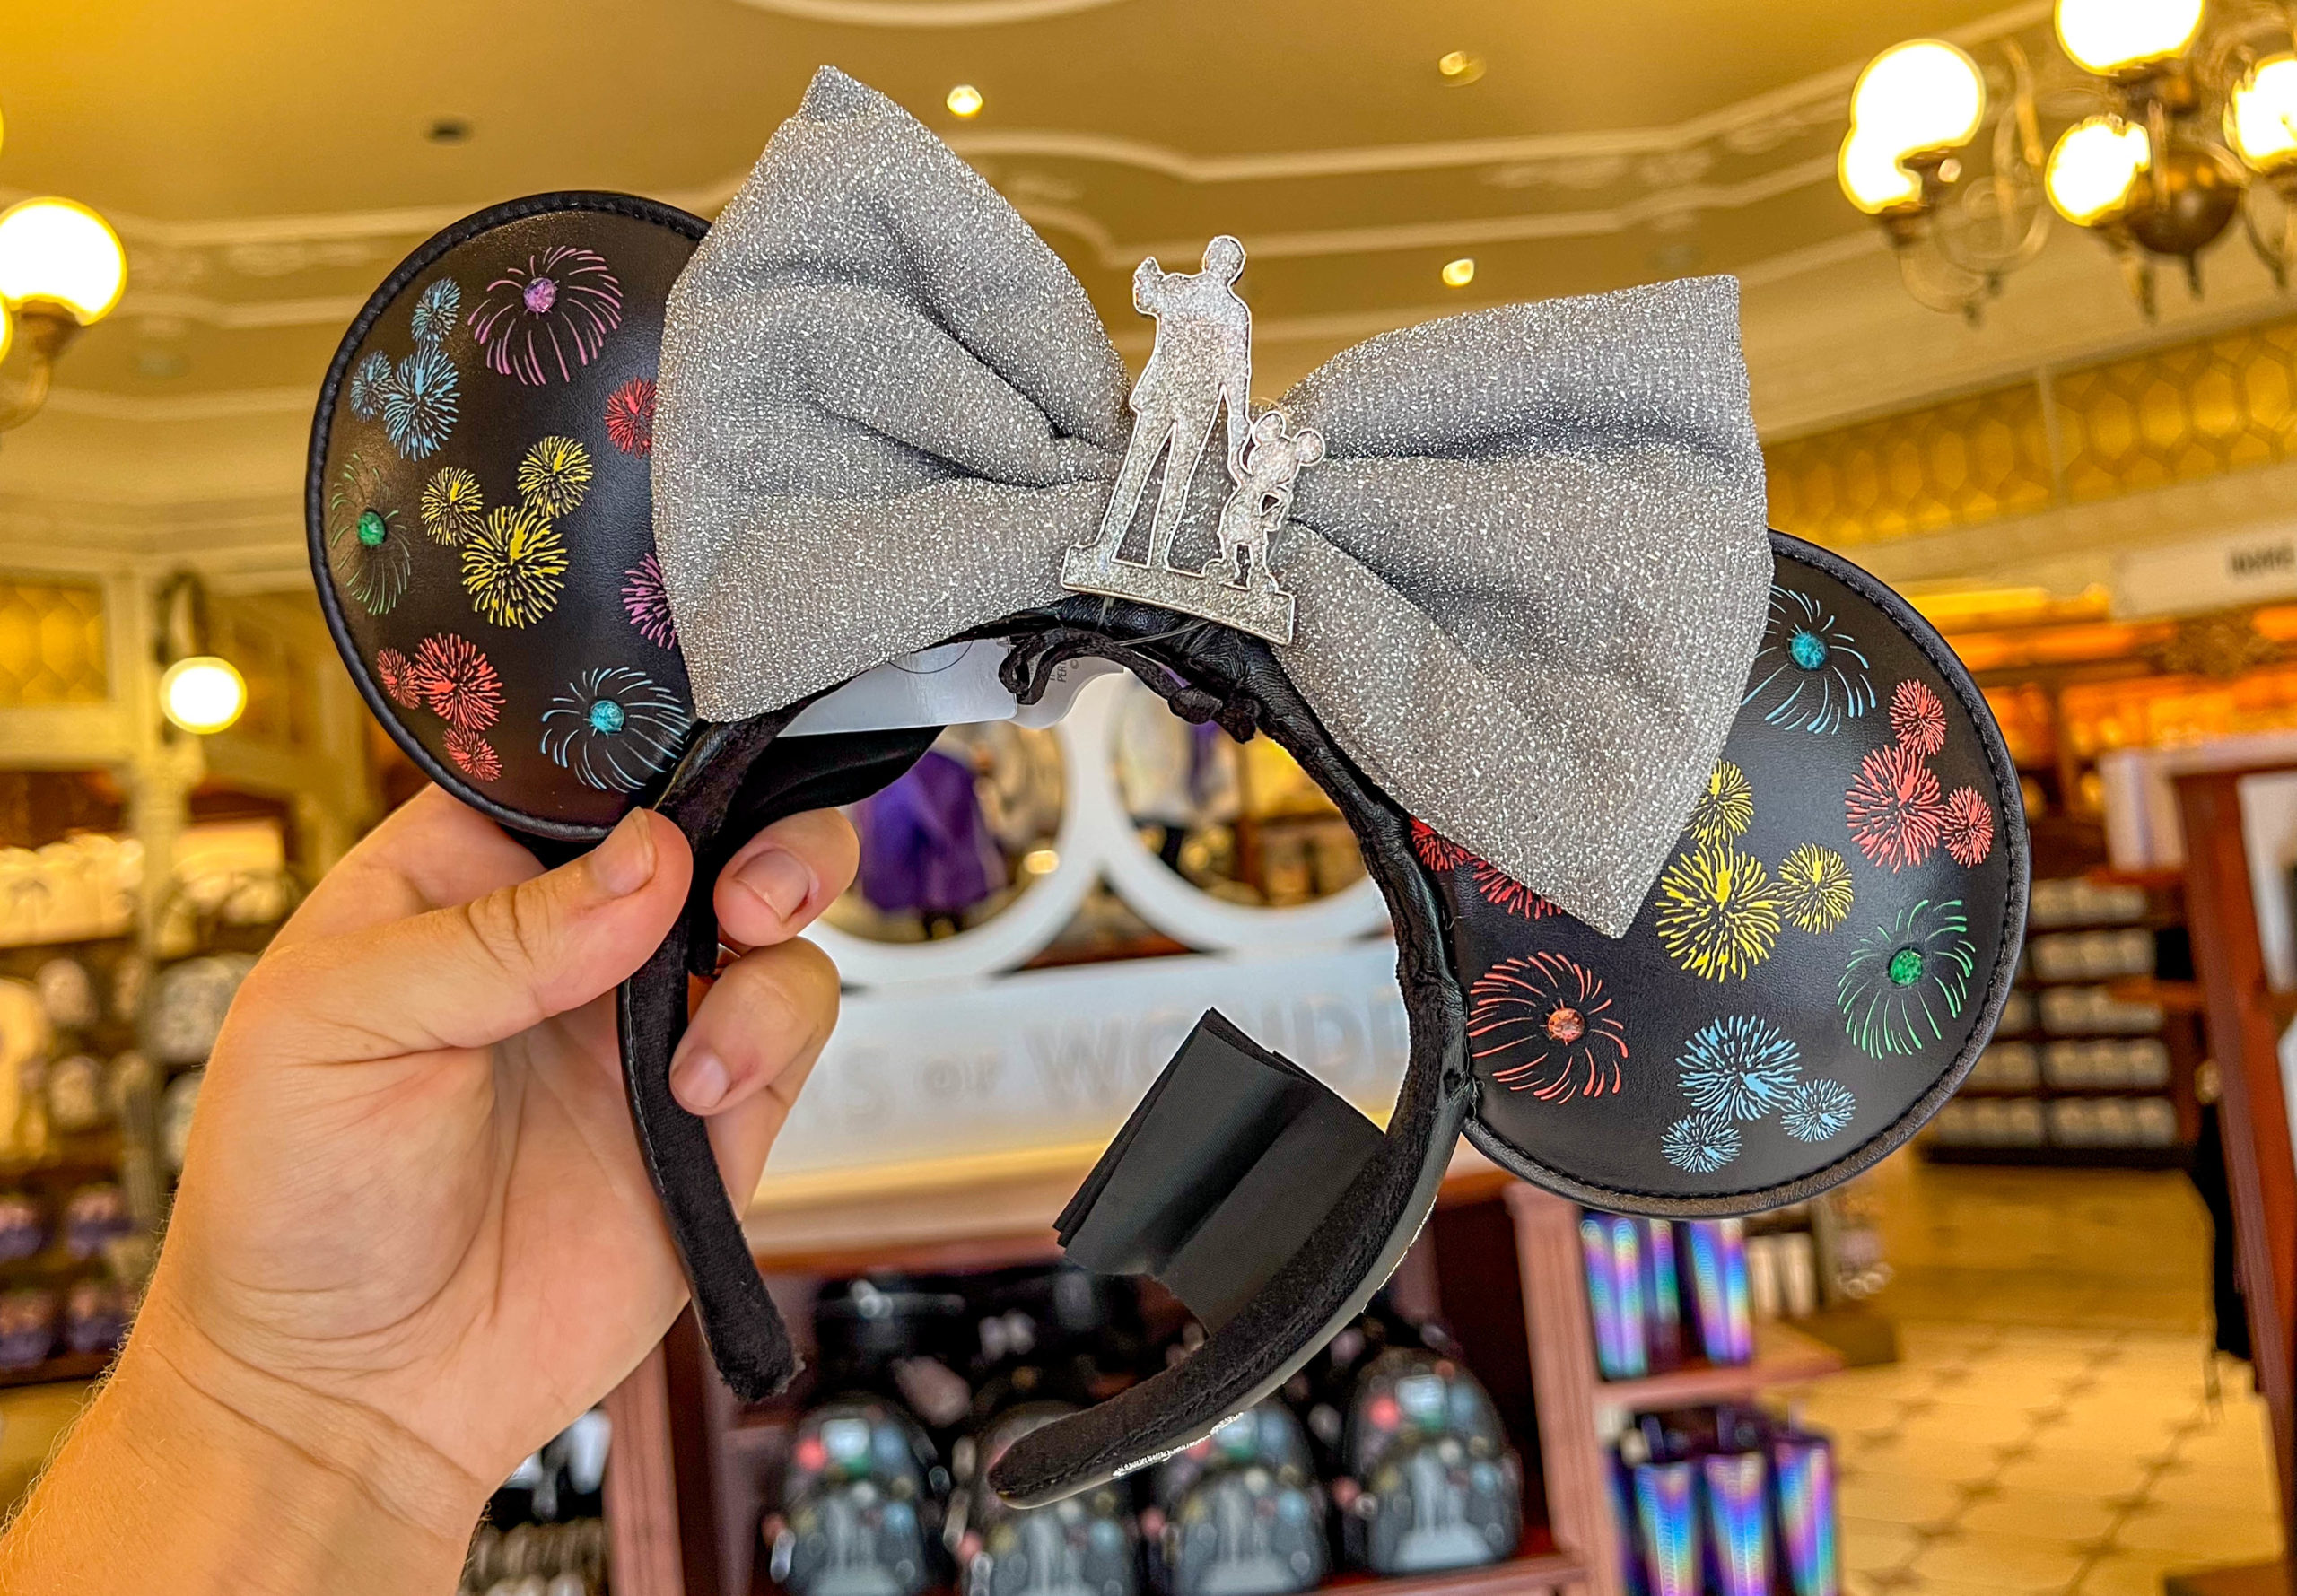 Disney's Minnie Mouse Ear Headbands